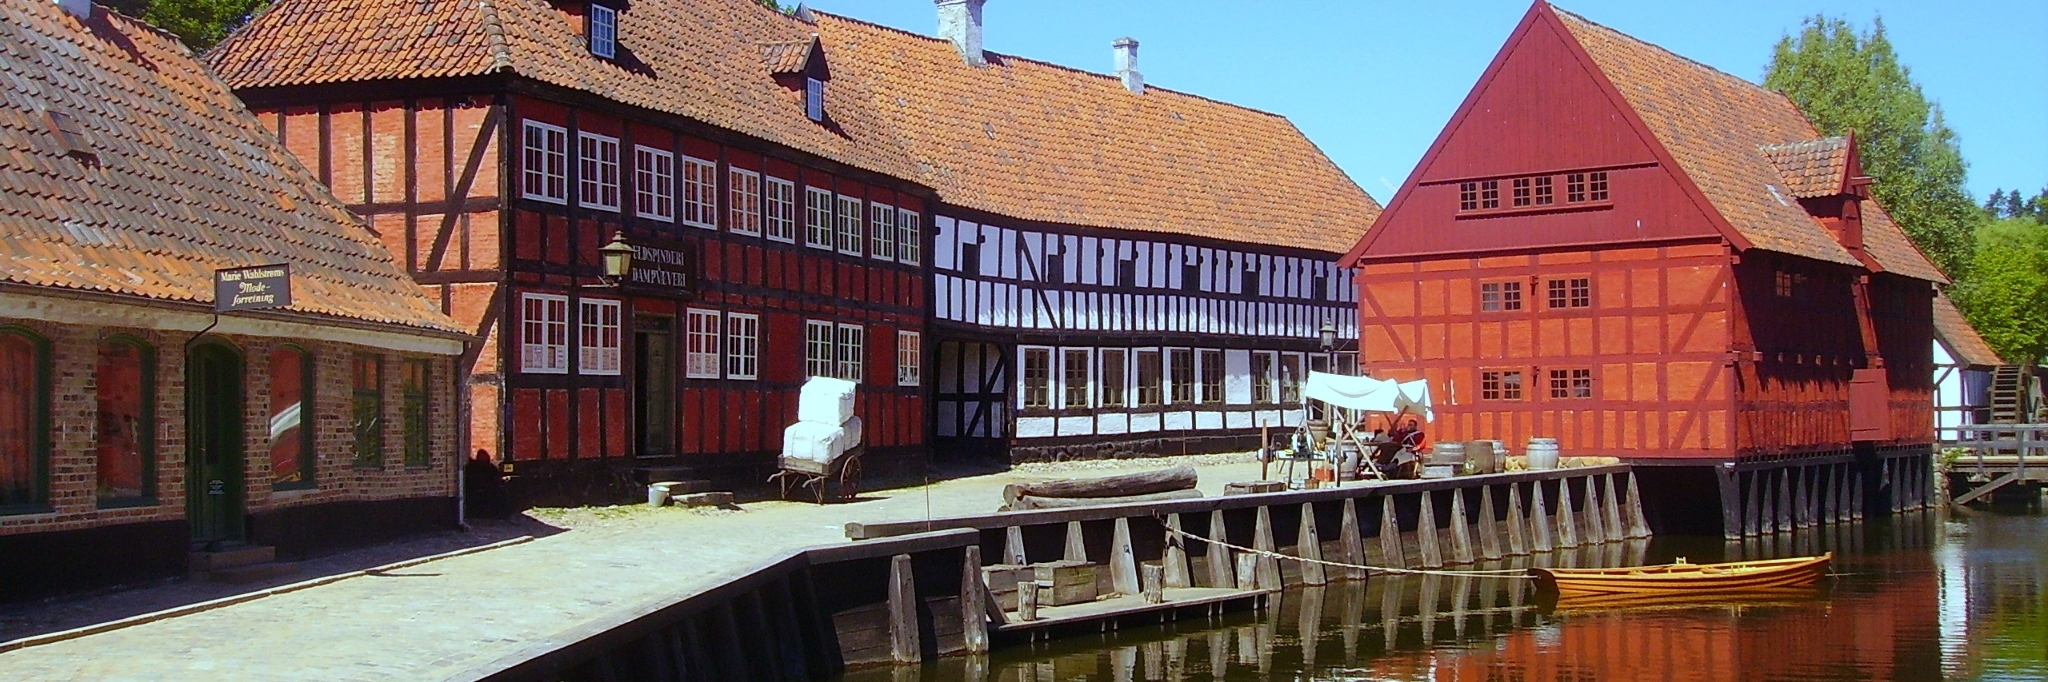 Old Town, Aarhus